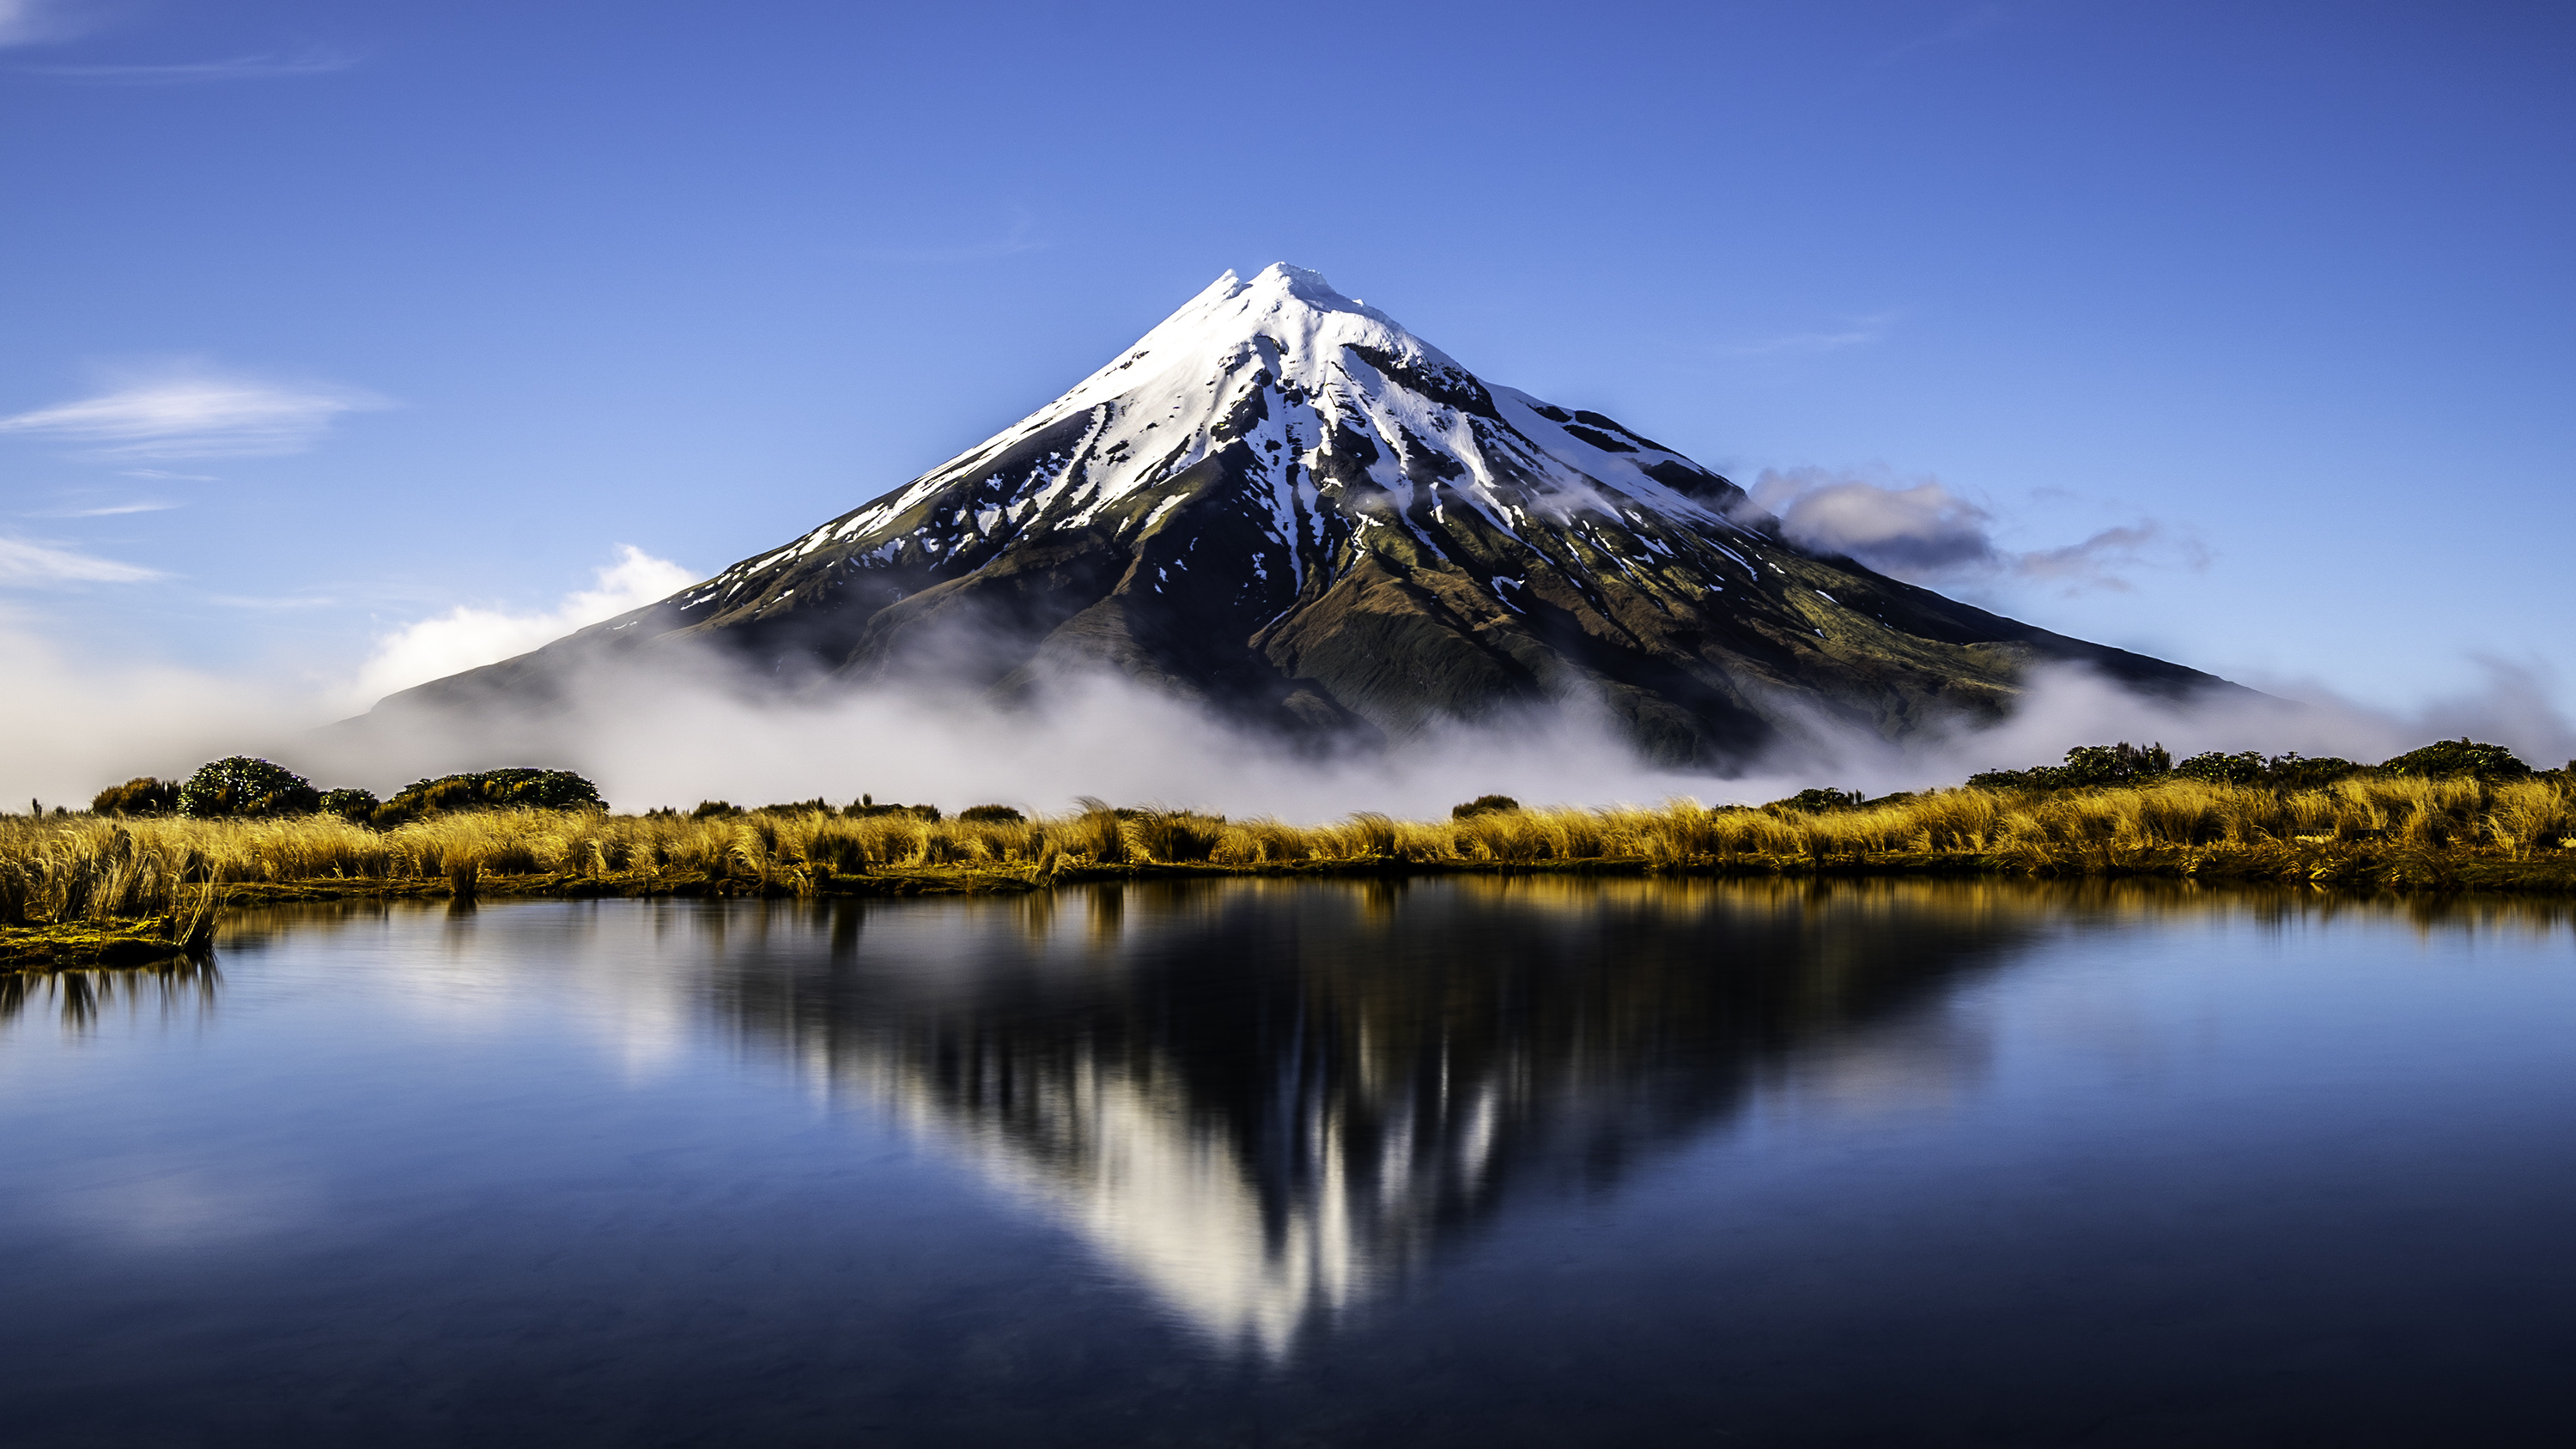 Les touristes en Nouvelle-Zélande doivent obtenir une autorisation de voyage électronique